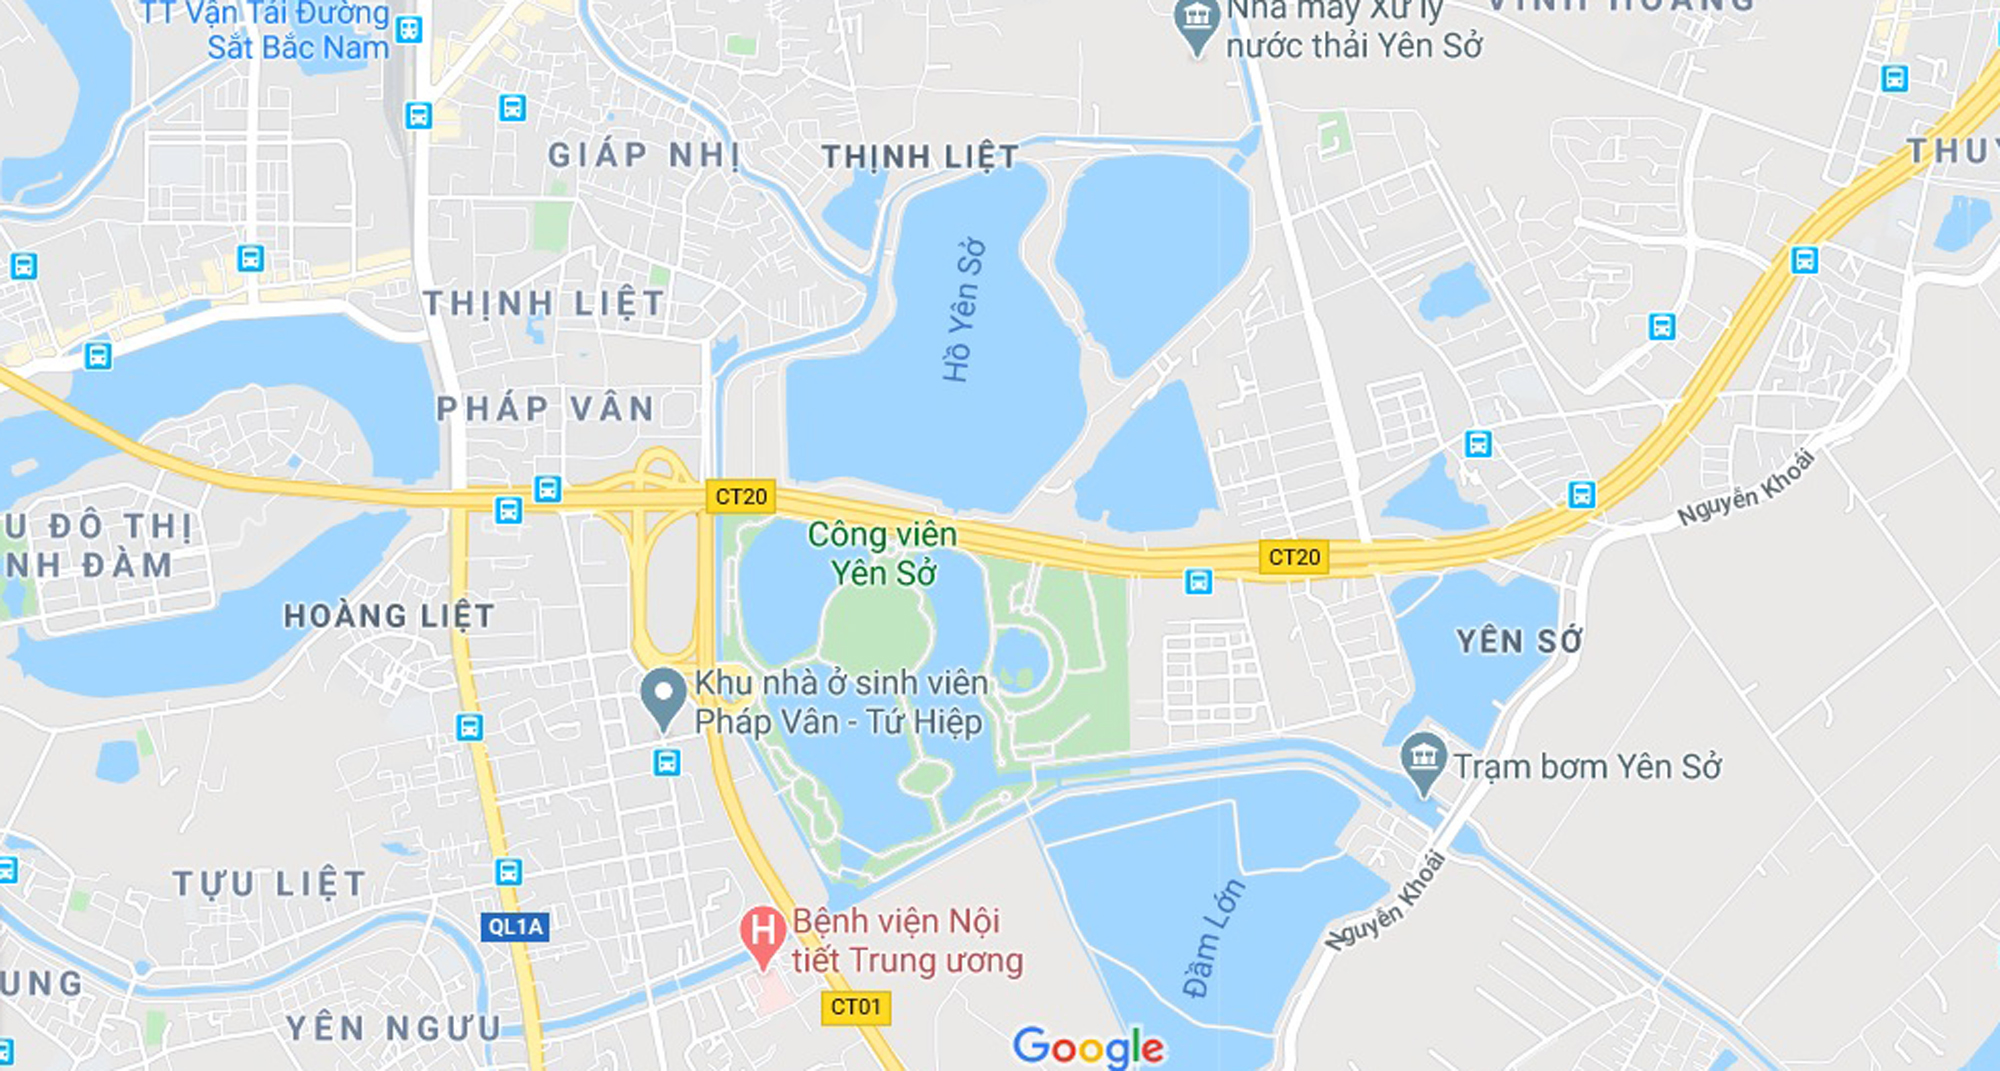 Khu đô thị ven hồ Yên Sở theo qui hoạch nằm trong khu vực khu B Công viên hồ Yên Sở, thuộc địa giới hành chính các phường Hoàng Liệt, Thịnh Liệt, Yên Sở, quận Hoàng Mai. (Nguồn ảnh: Google).